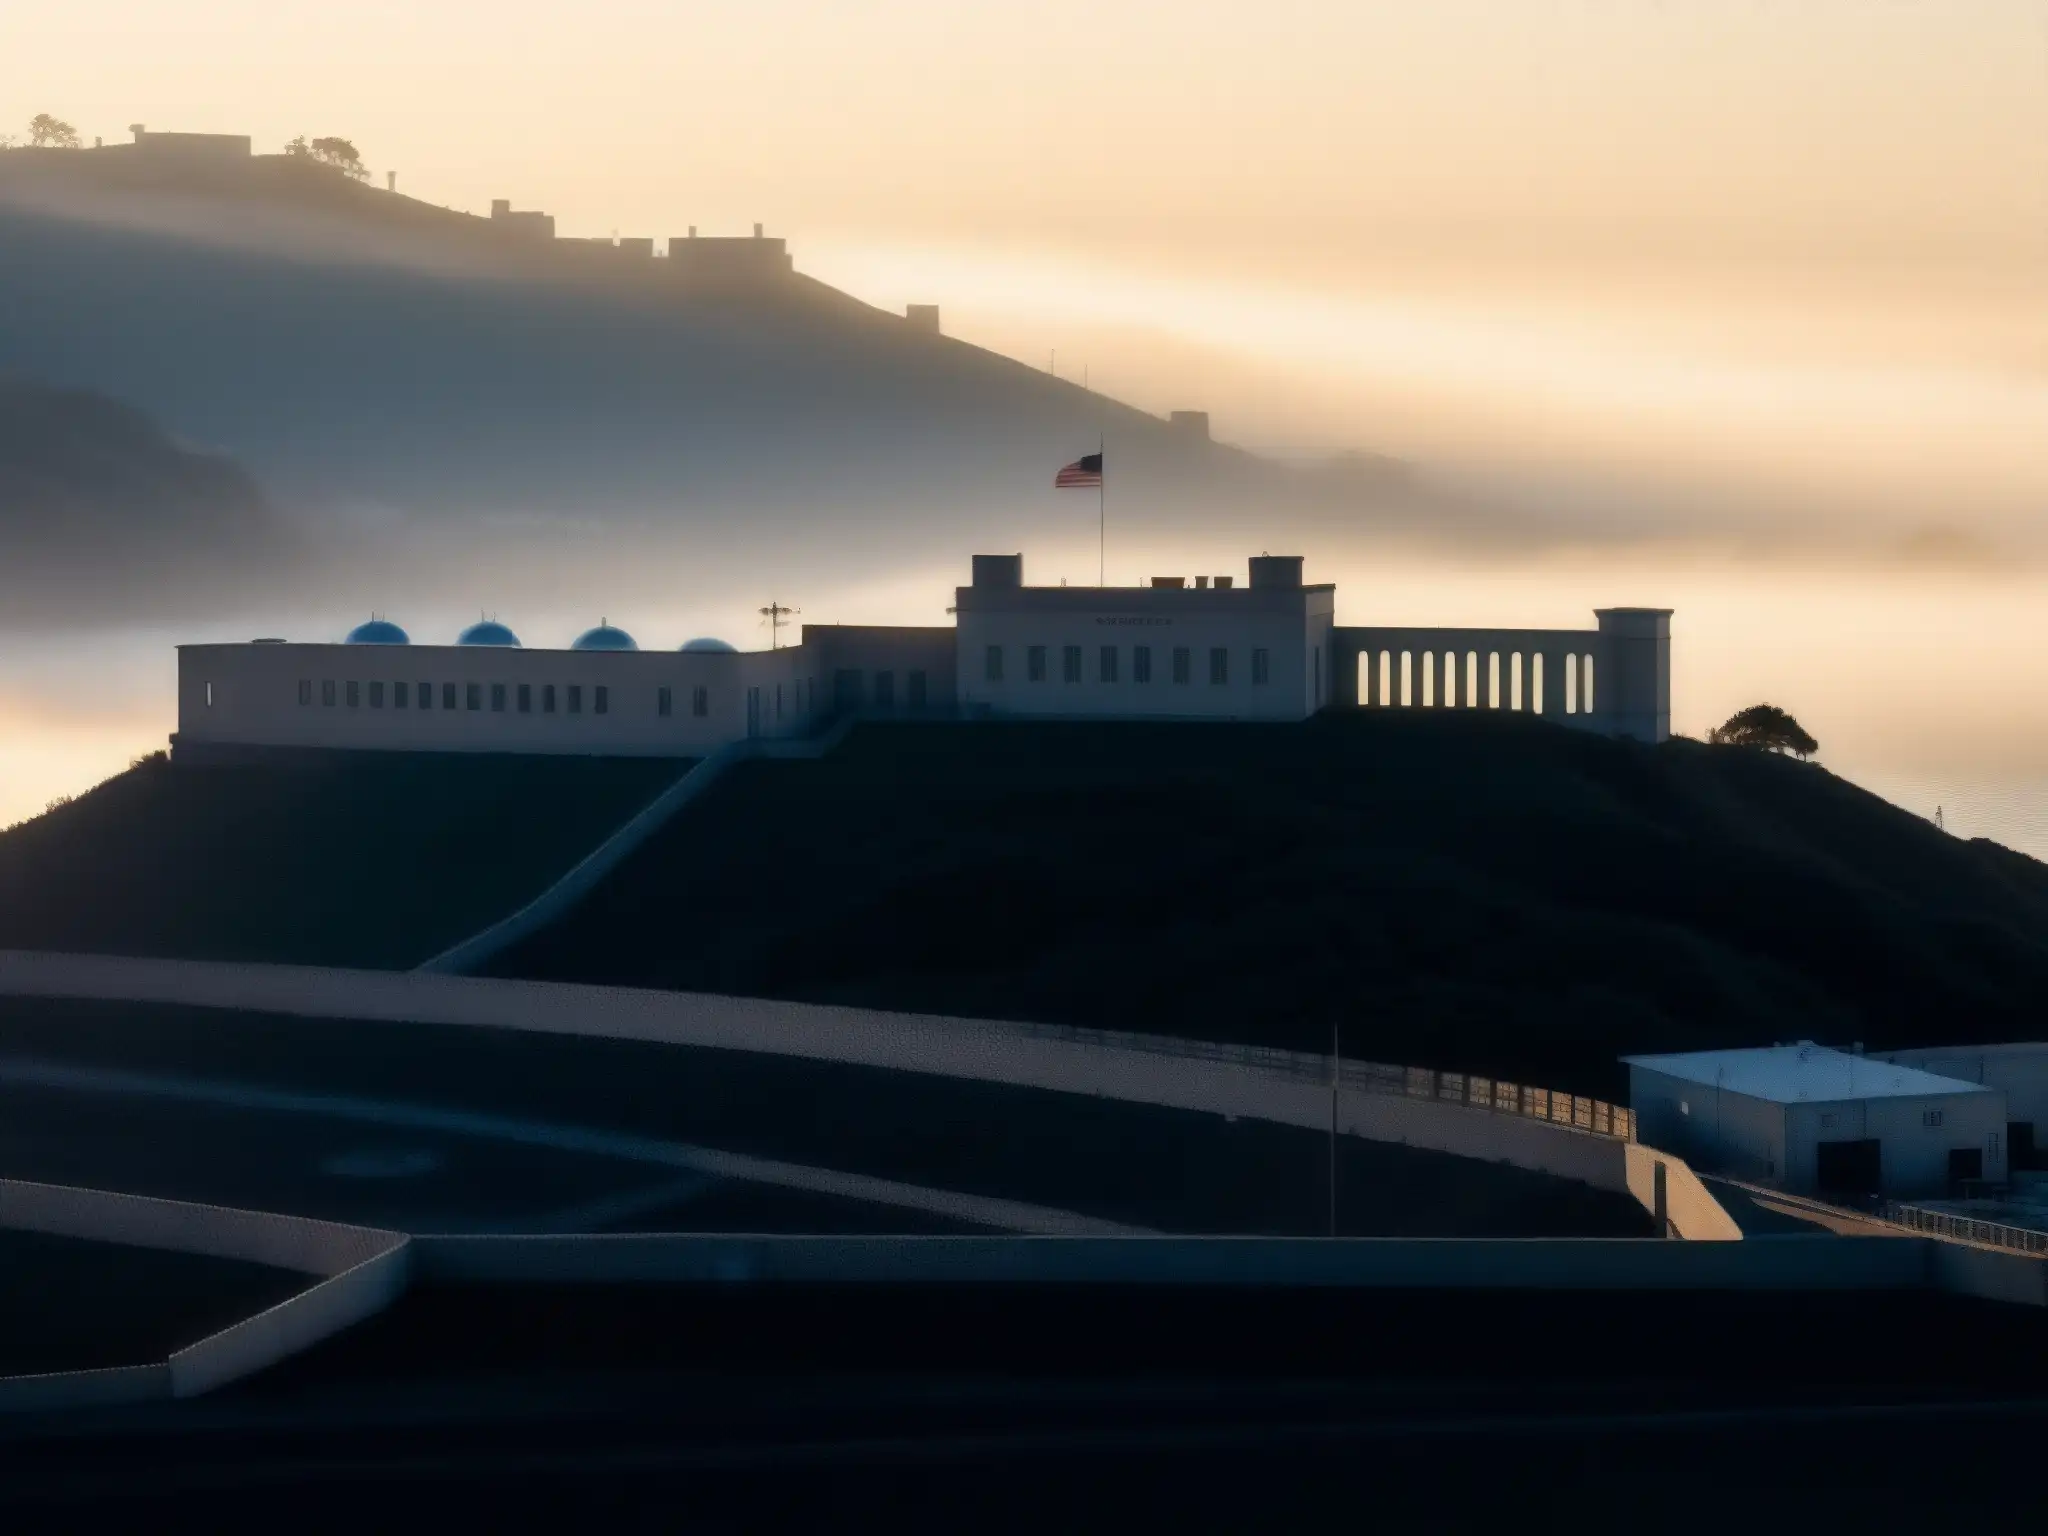 La imponente prisión de San Quentin al atardecer, con niebla y una atmósfera misteriosa que evoca el mito urbano del 'Espíritu de San Quentin'